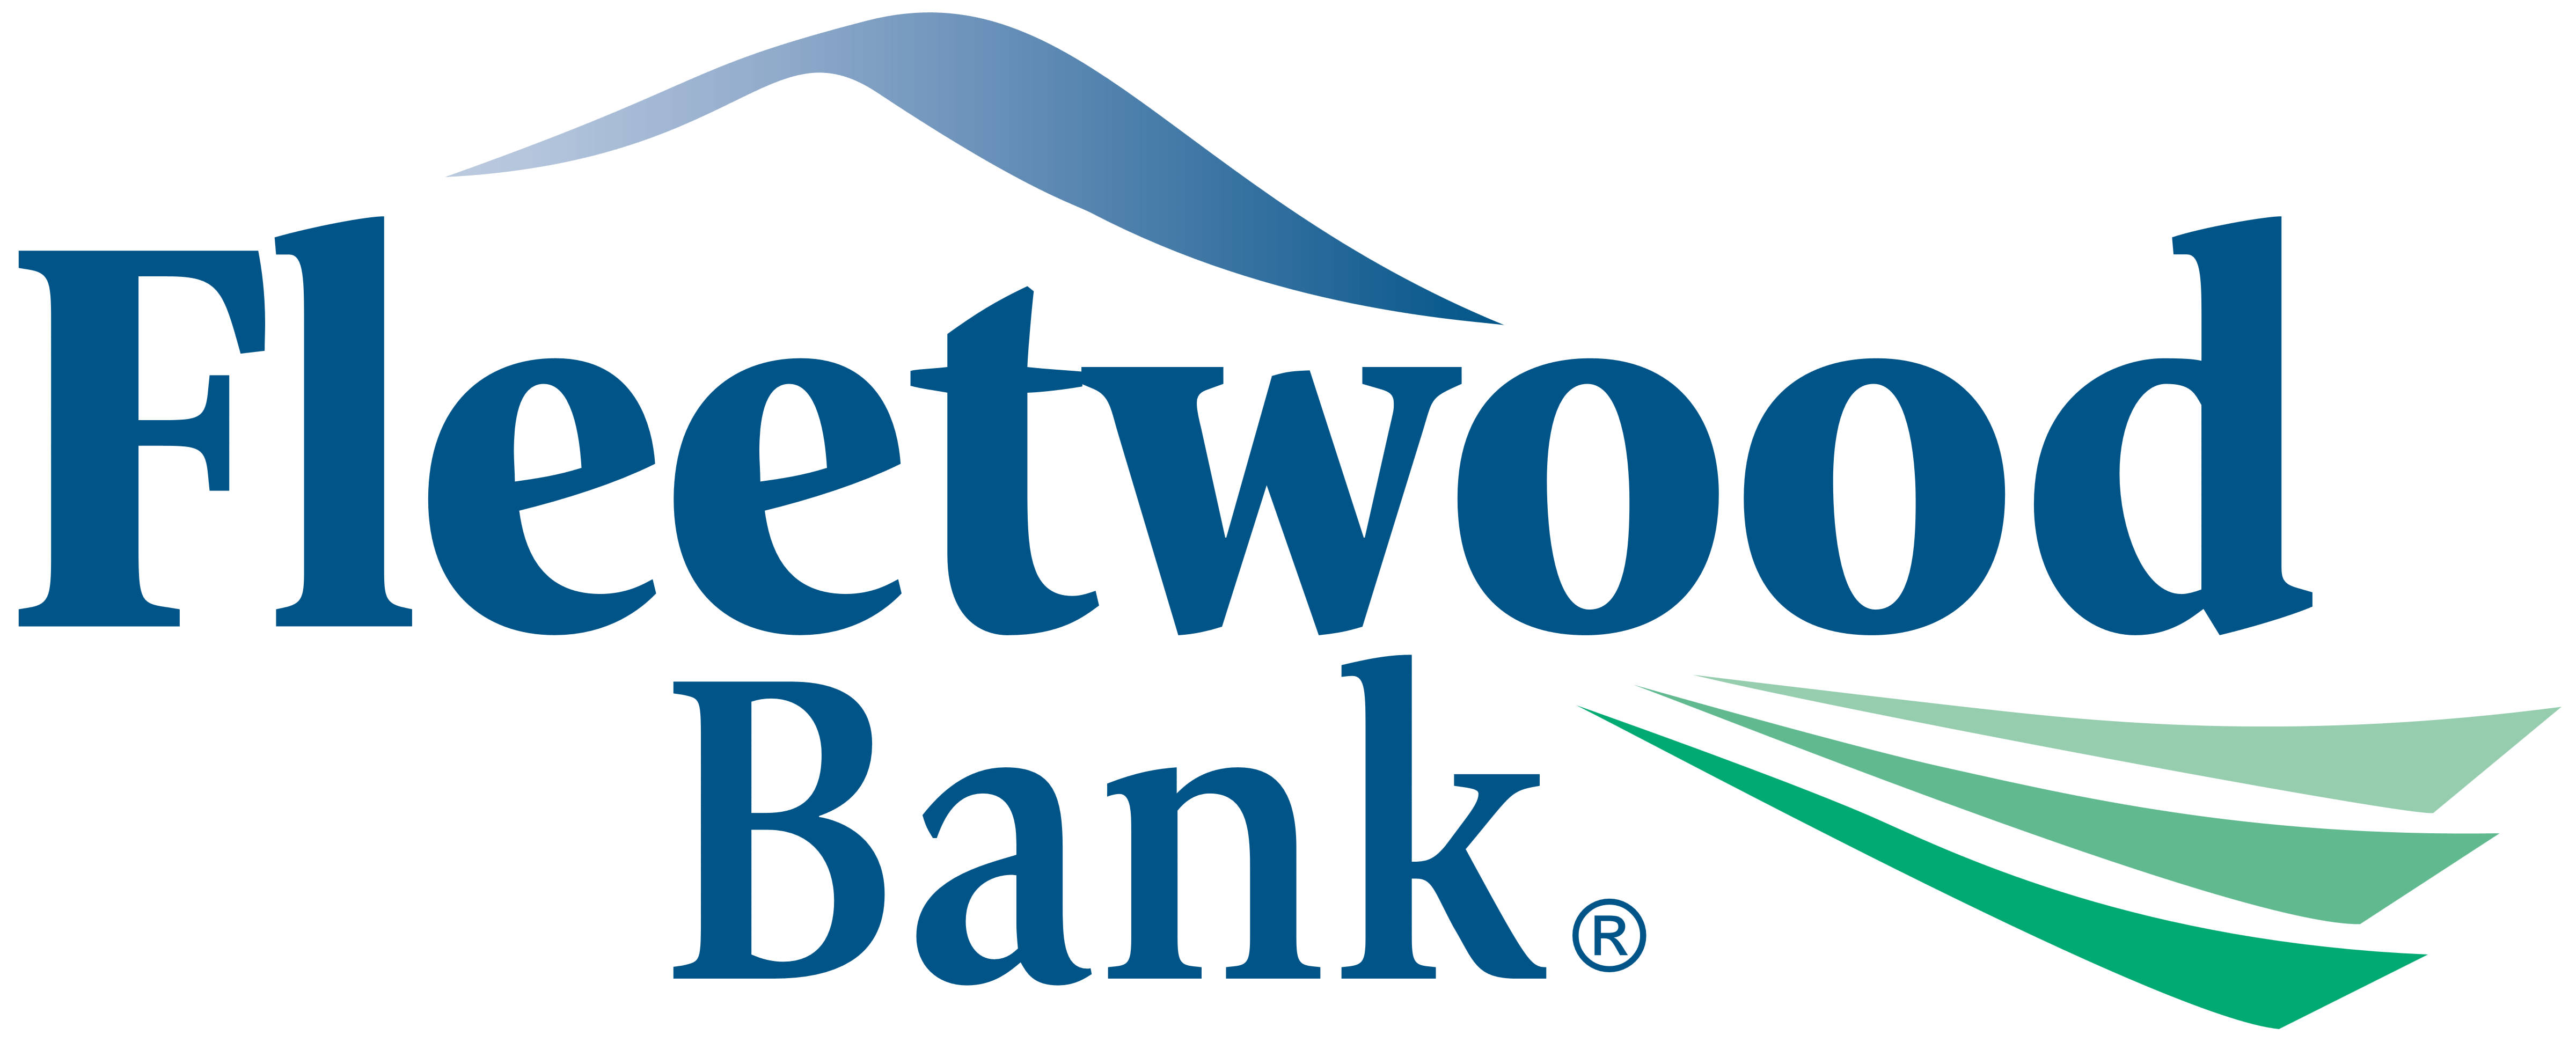 Fleetwood Logo - Fleetwood Bank